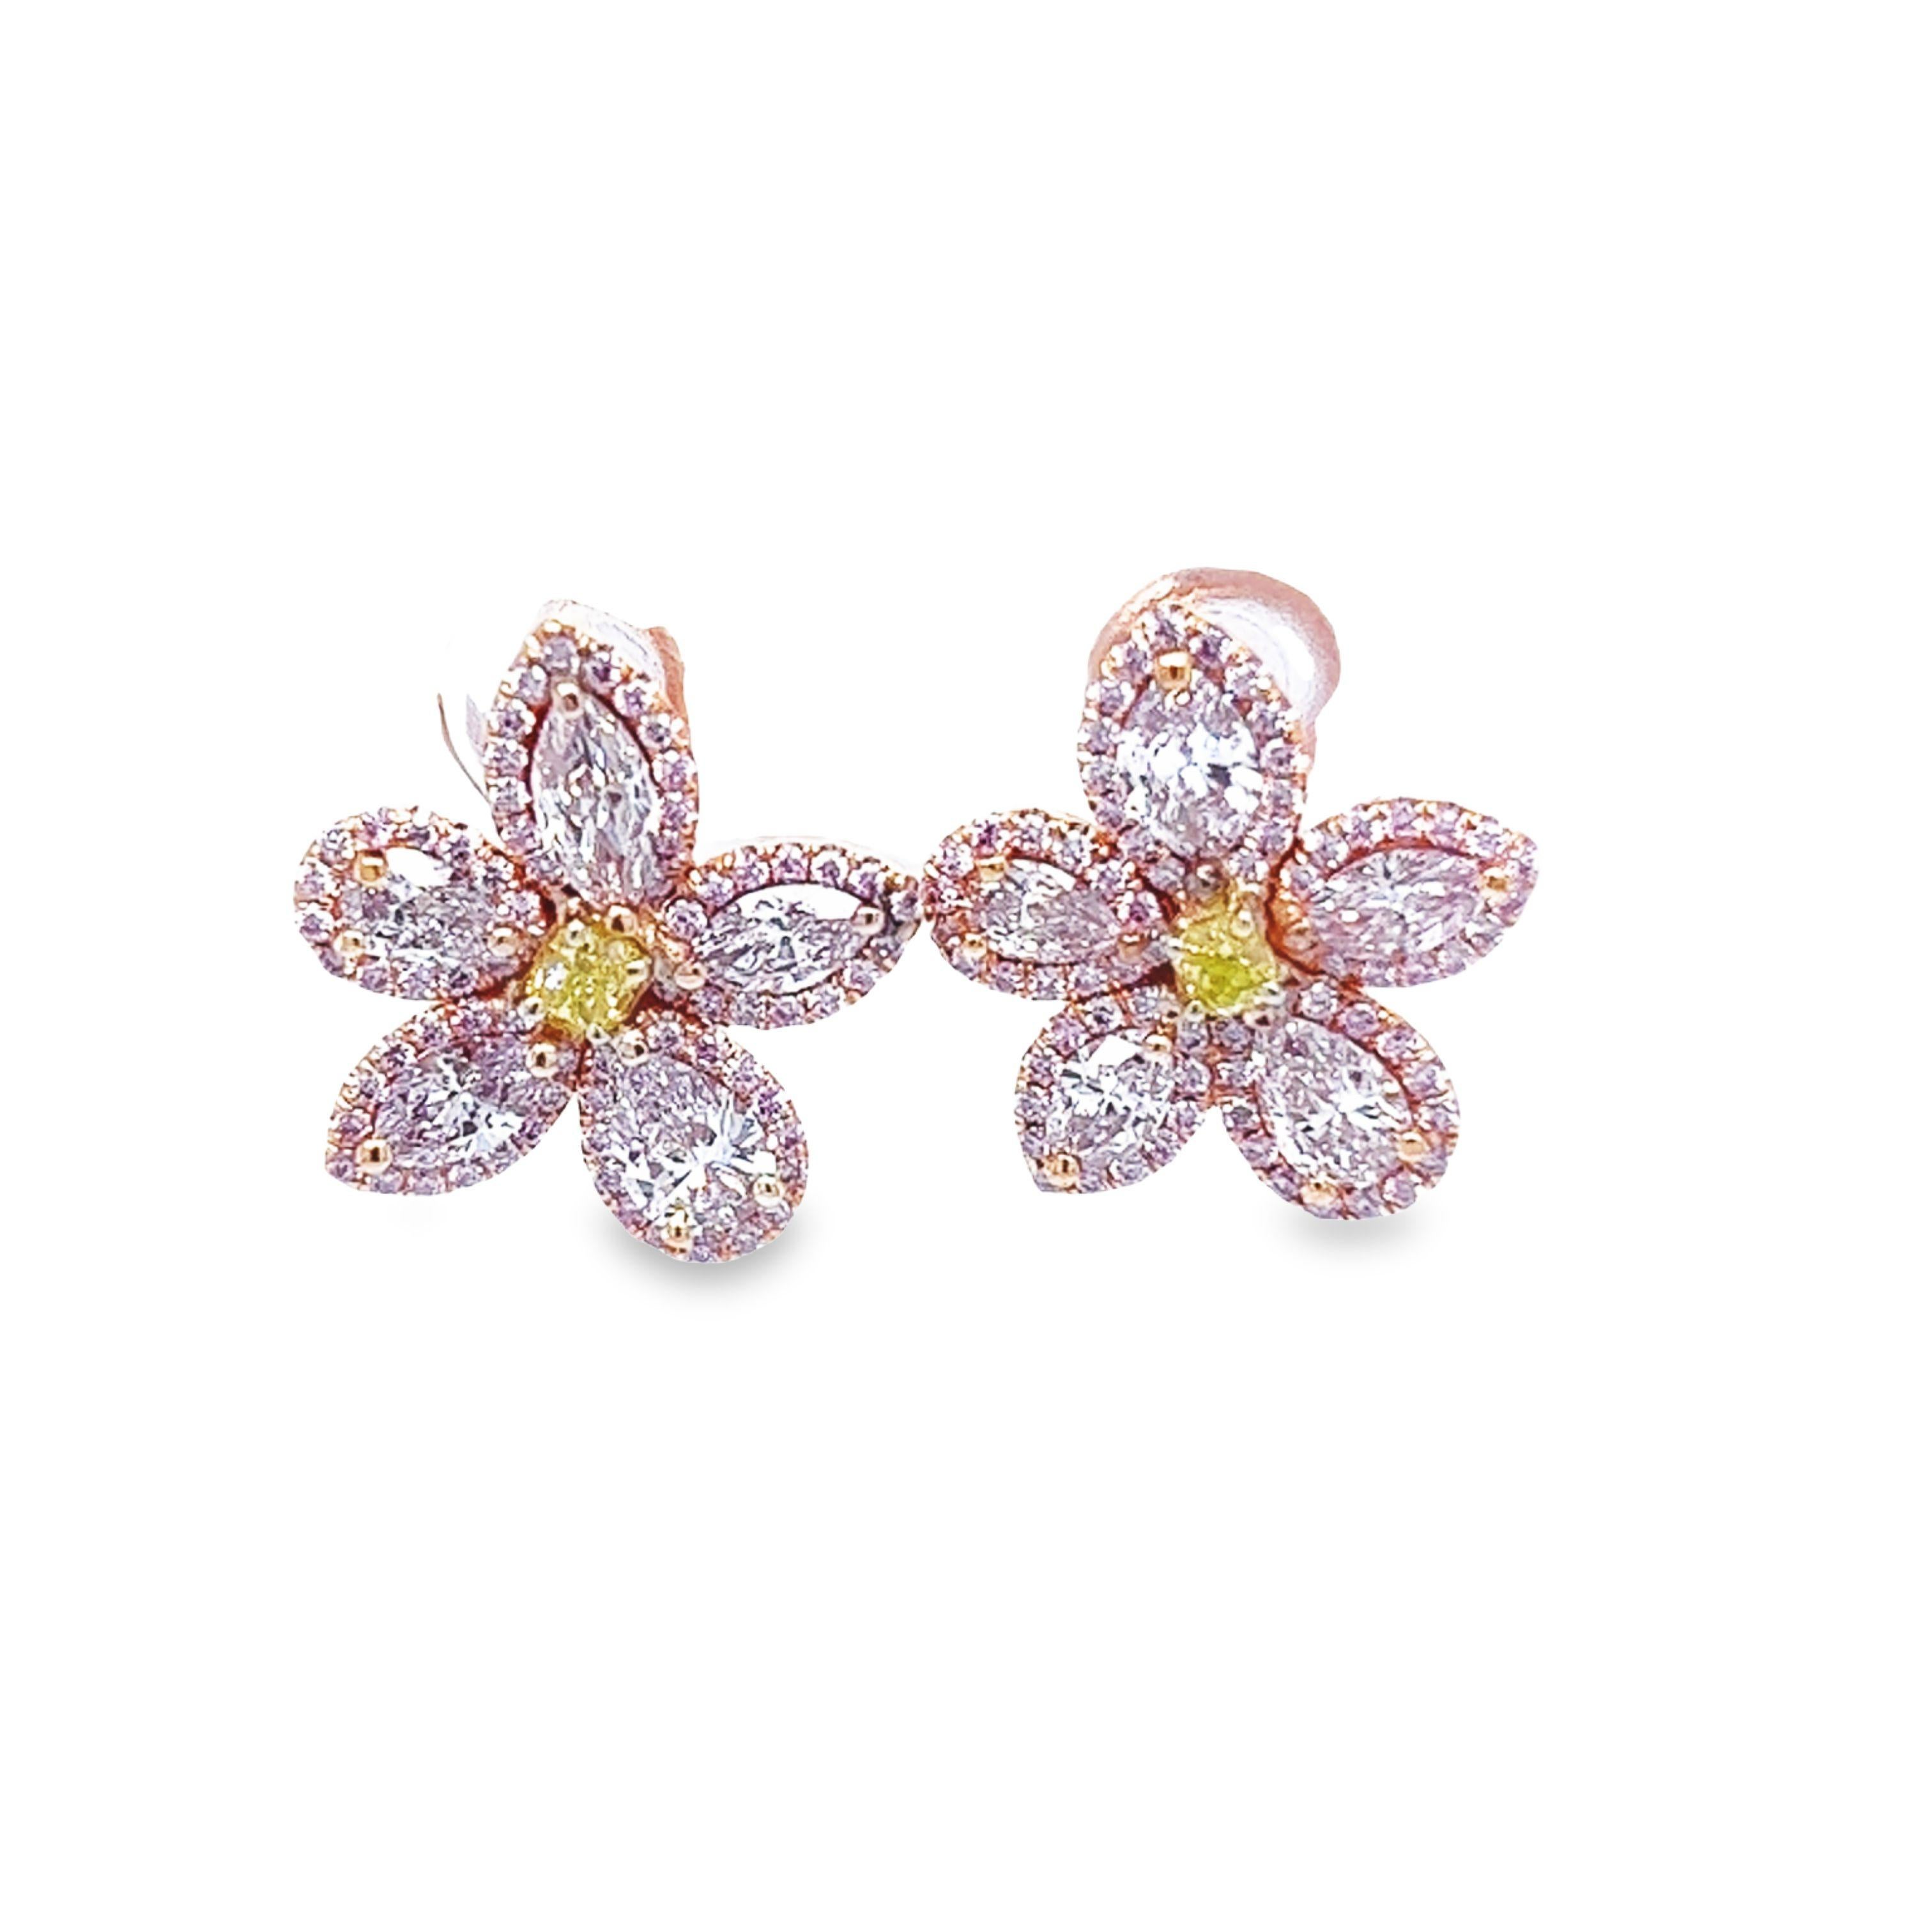 David Rosenberg 2.35 Carat Pink & Green GIA Flower Diamond Stud Earring For Sale 2